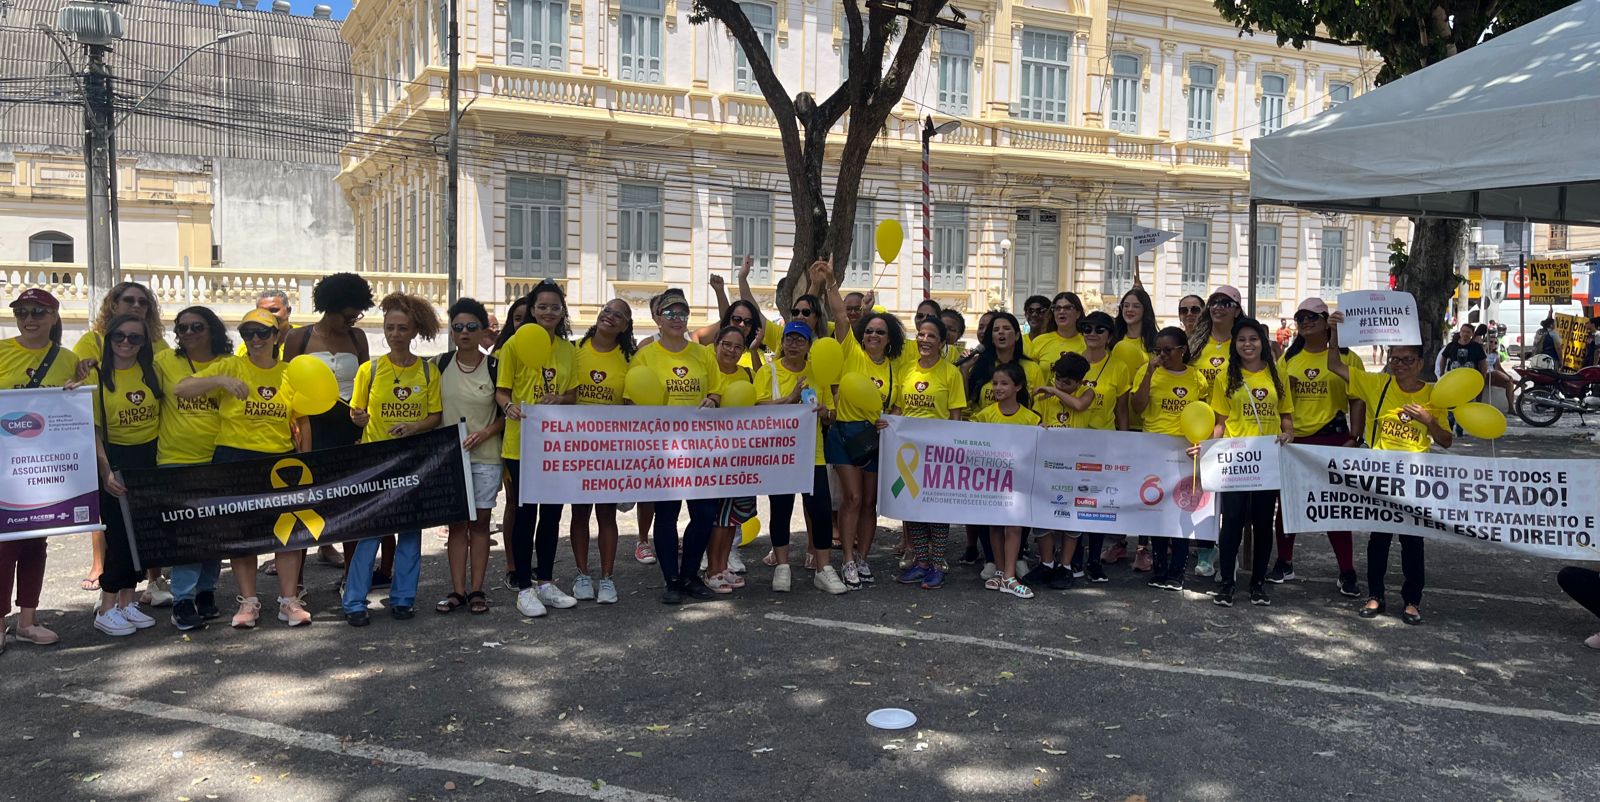 EndoMarcha em Feira de Santana promove conscientização sobre endometriose